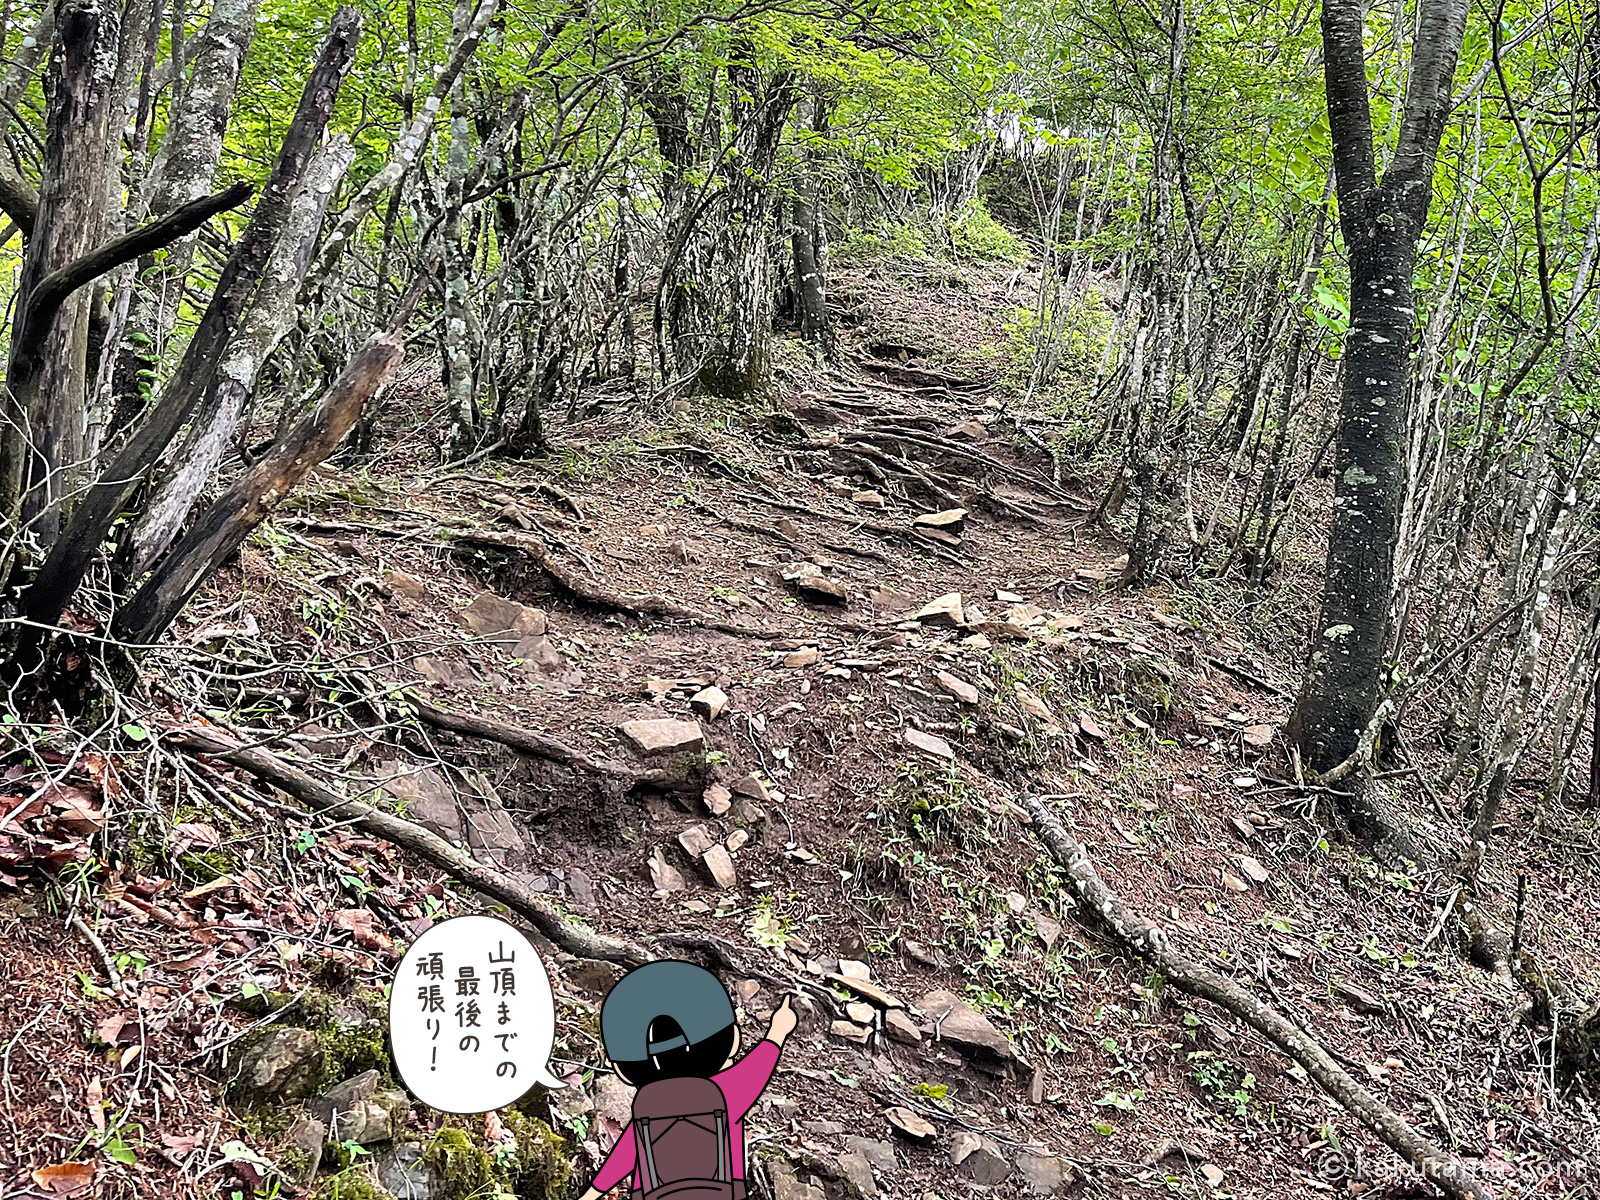 滝子山山頂への最後の登り尾根の写真と登山者のイラスト